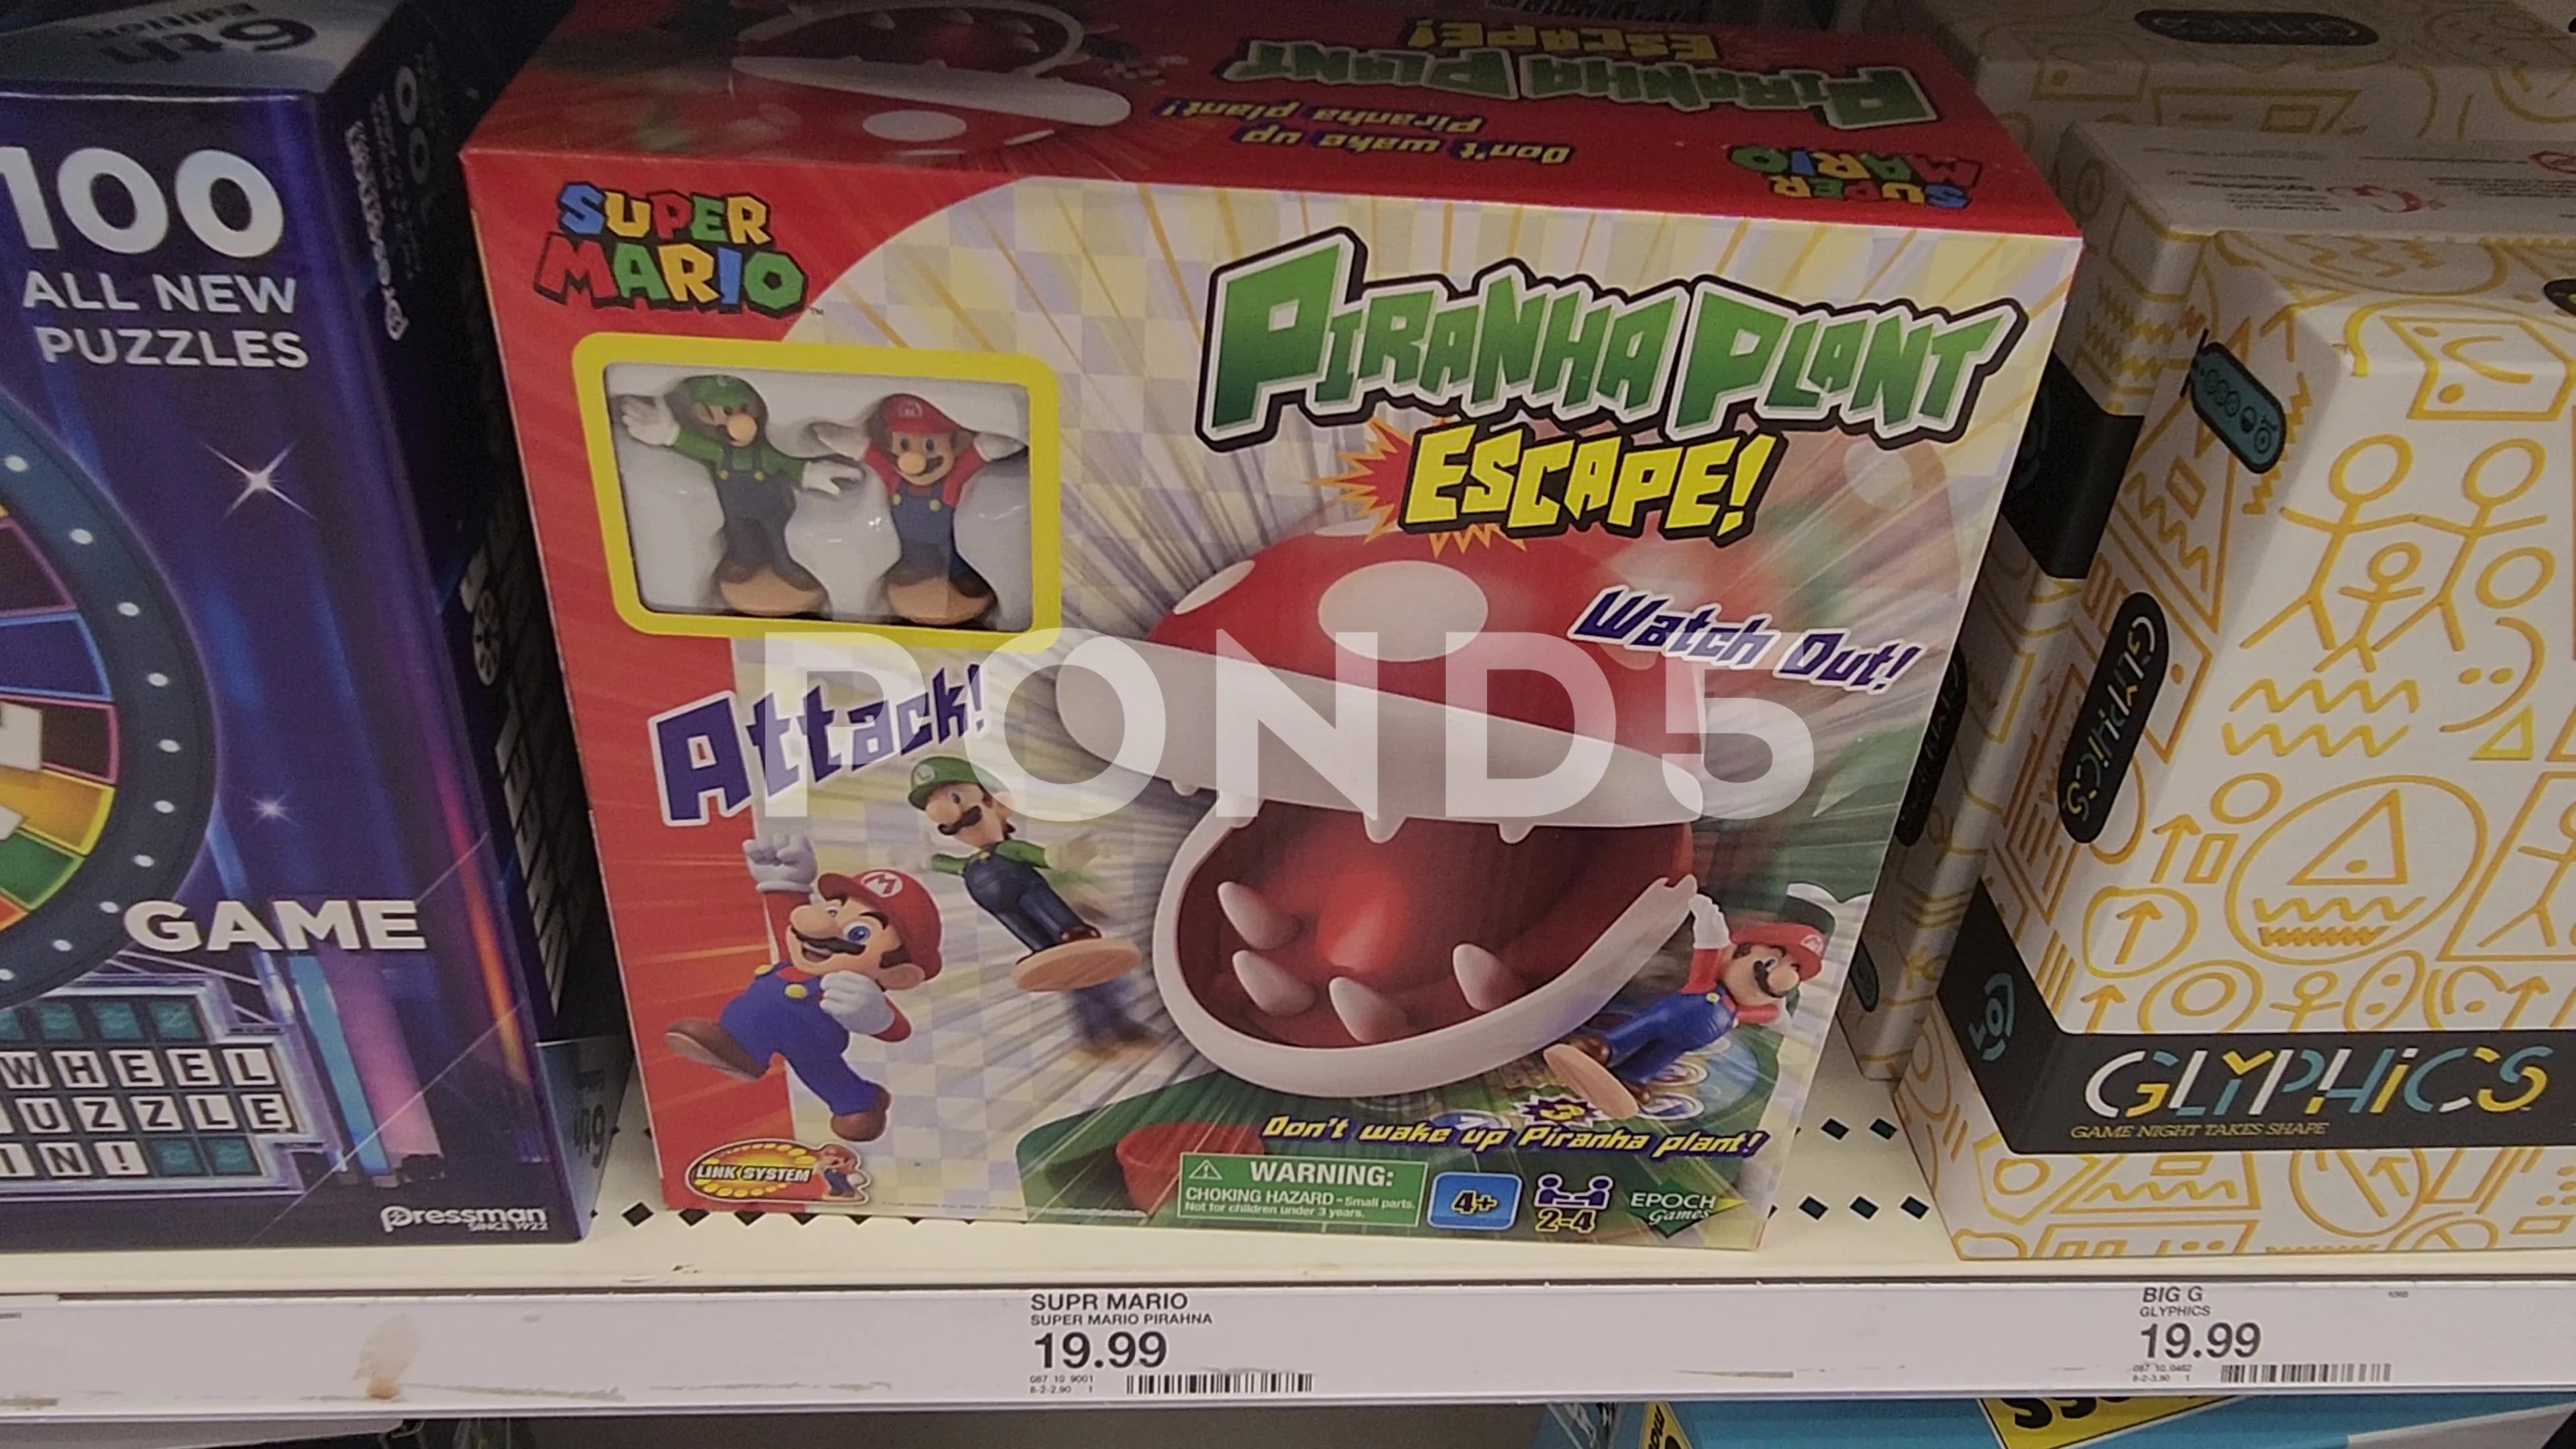  Epoch Games Super Mario Piranha Plant Escape